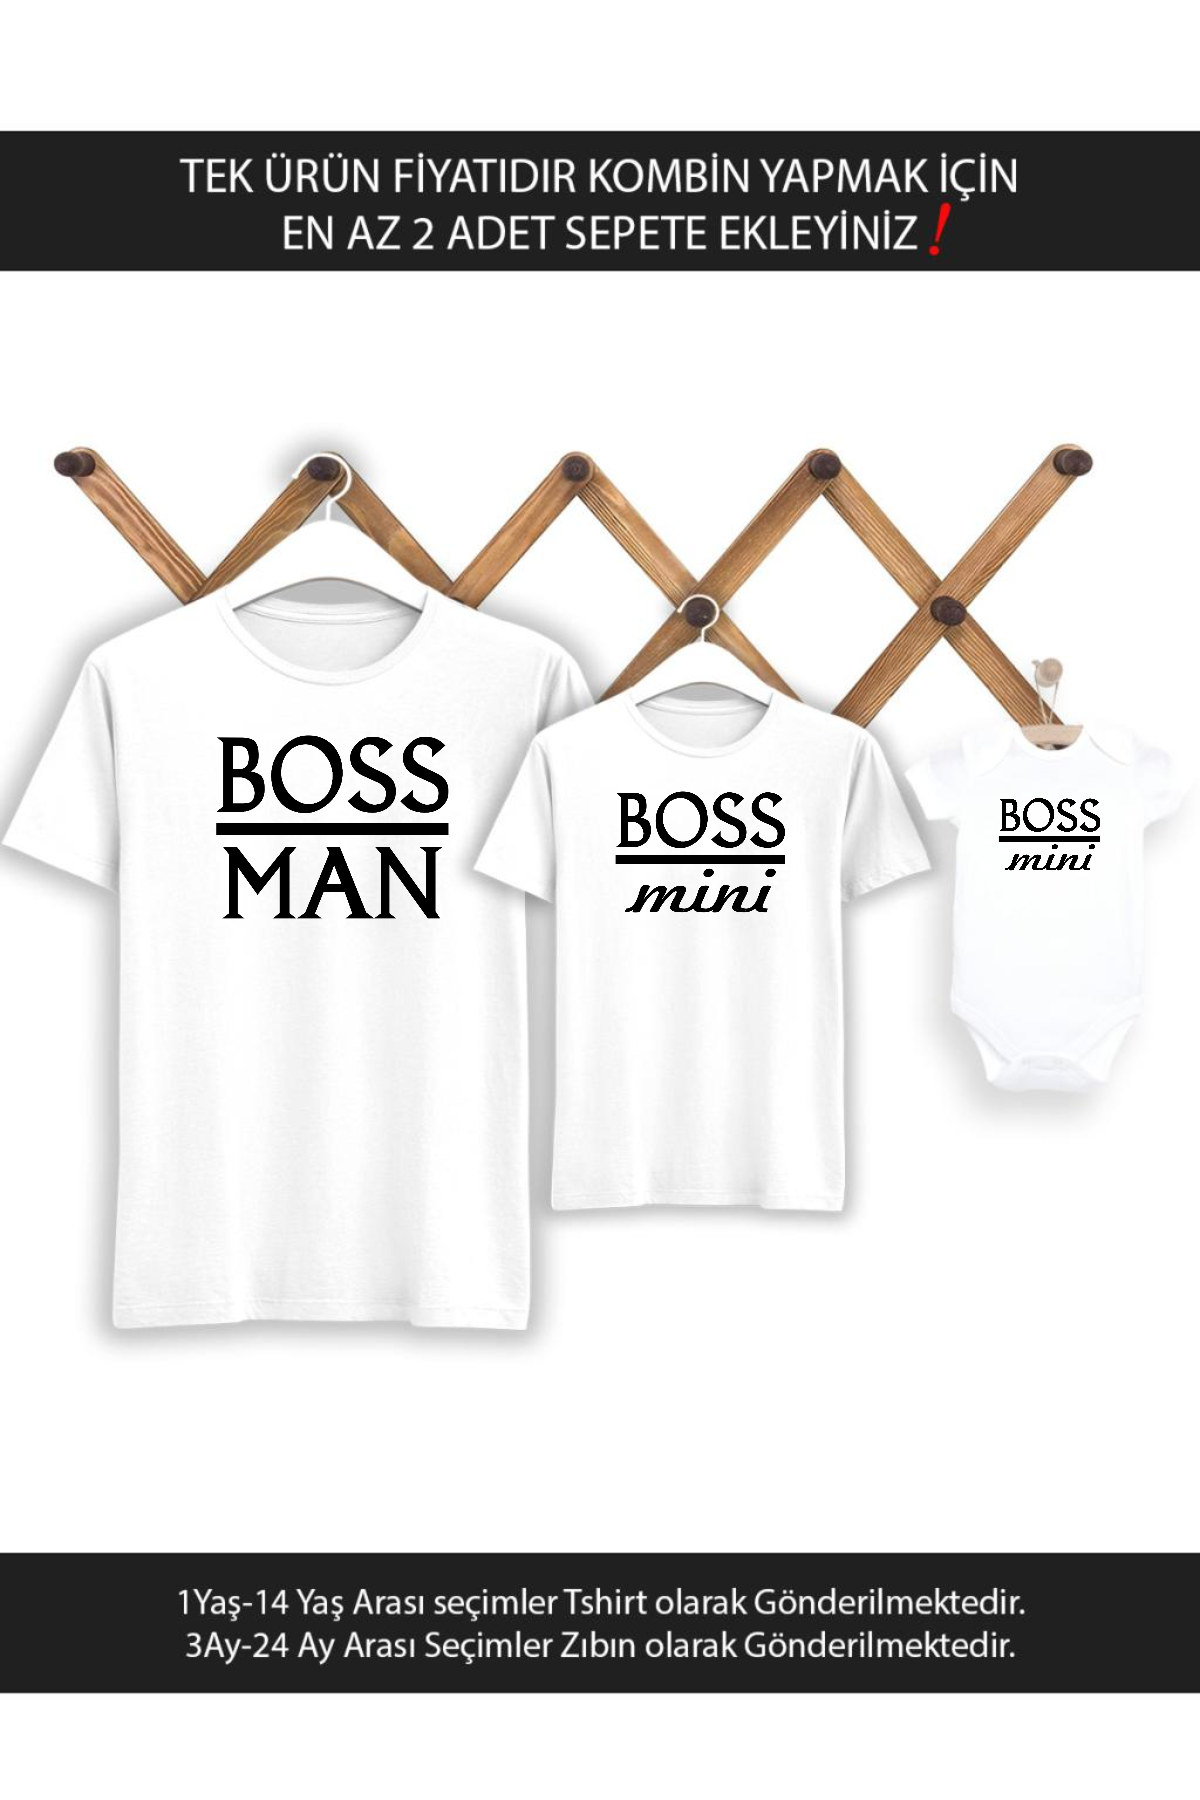 Boss Man Boss Mini Baba Oğul(TEK ÜRÜN FİYATIDIR KOMBİN YAPMAK İÇİN EN AZ 2 ADET SEPETE EKLEYİNİZ